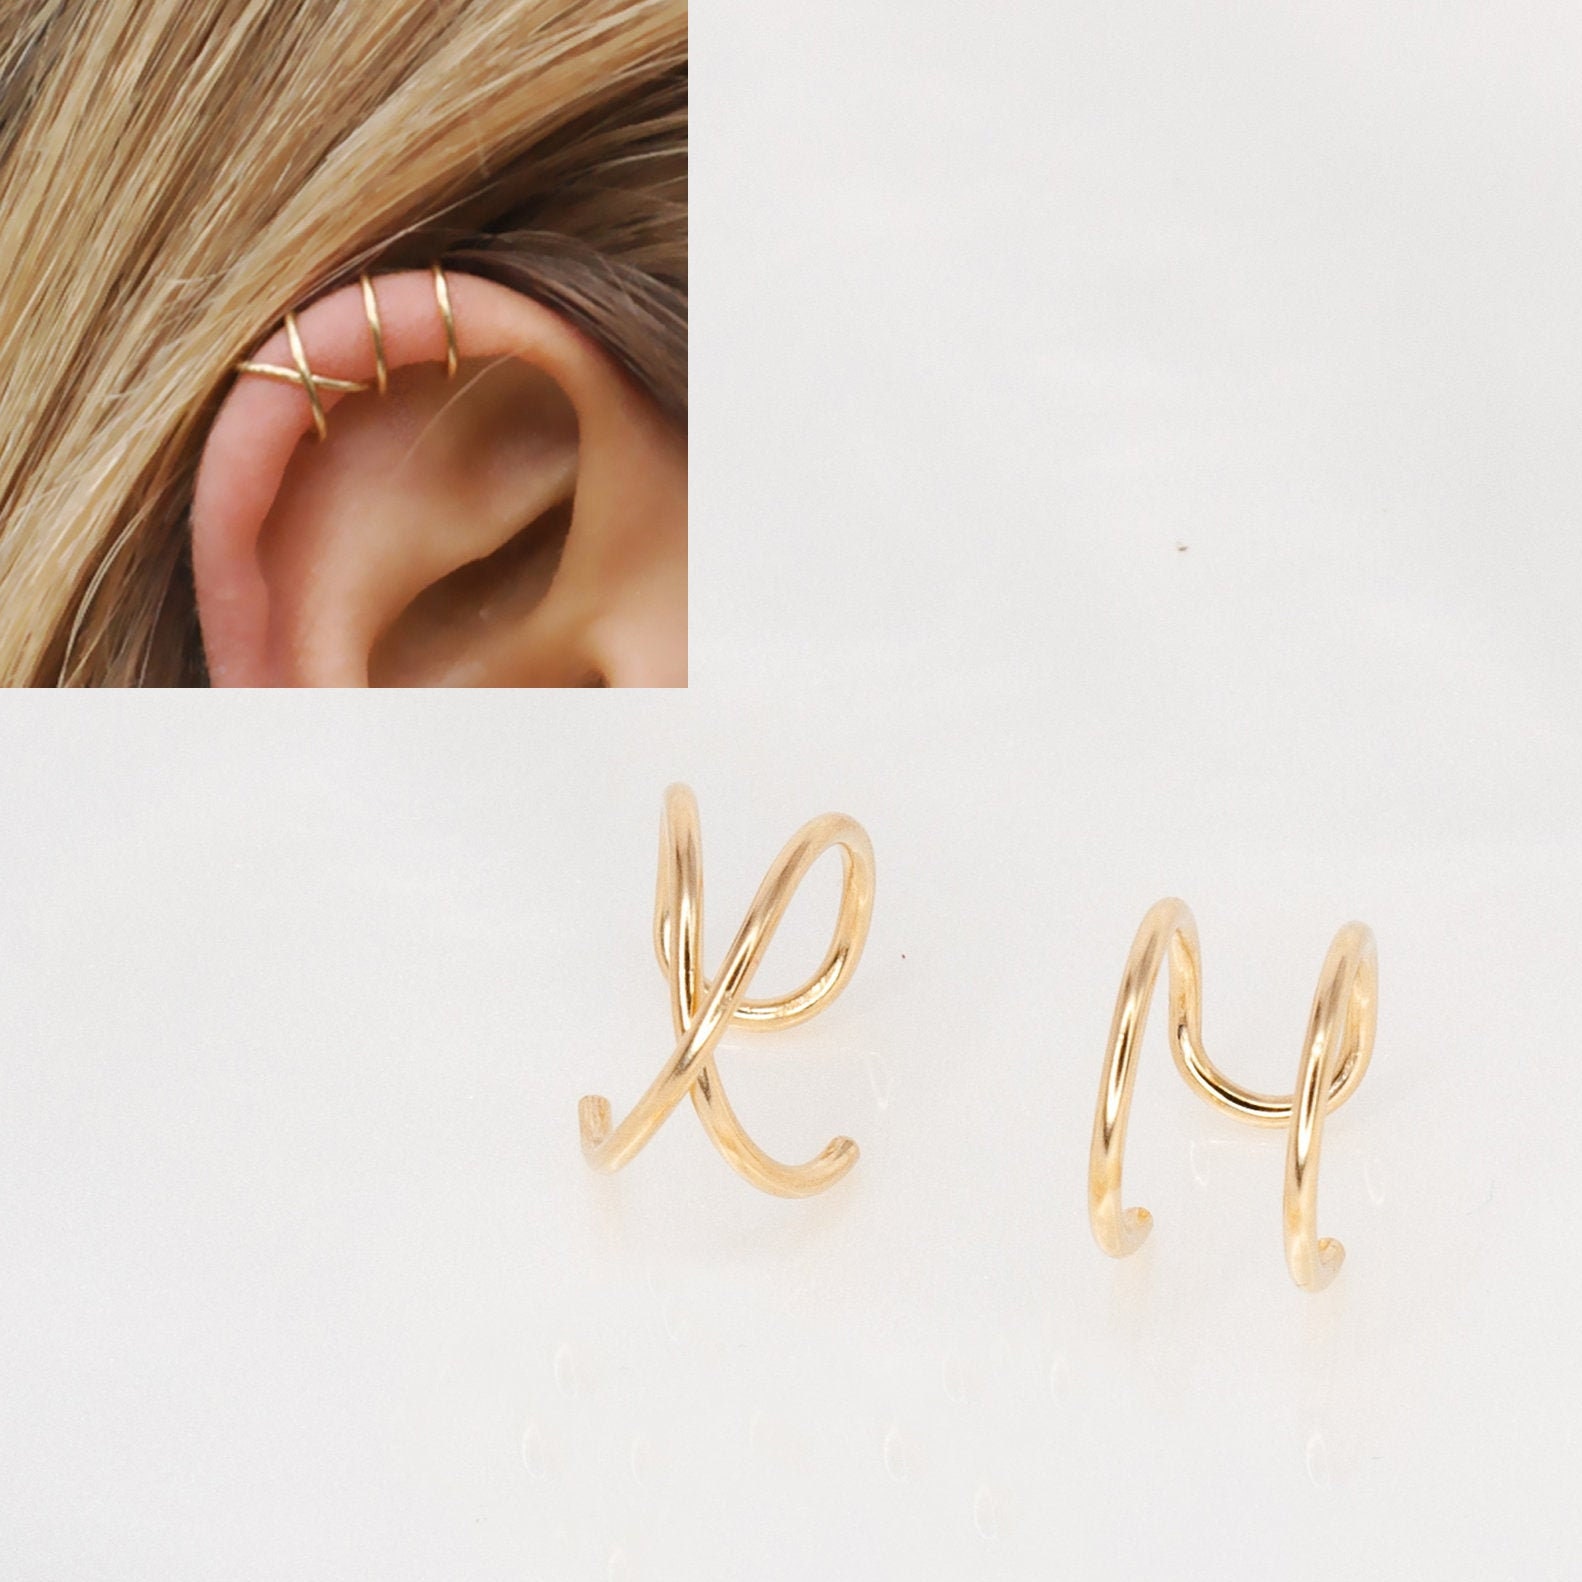 Buy Dainty Gold Earcuff Earring Cartilage Earring Clip On Triple Online in  India  Etsy